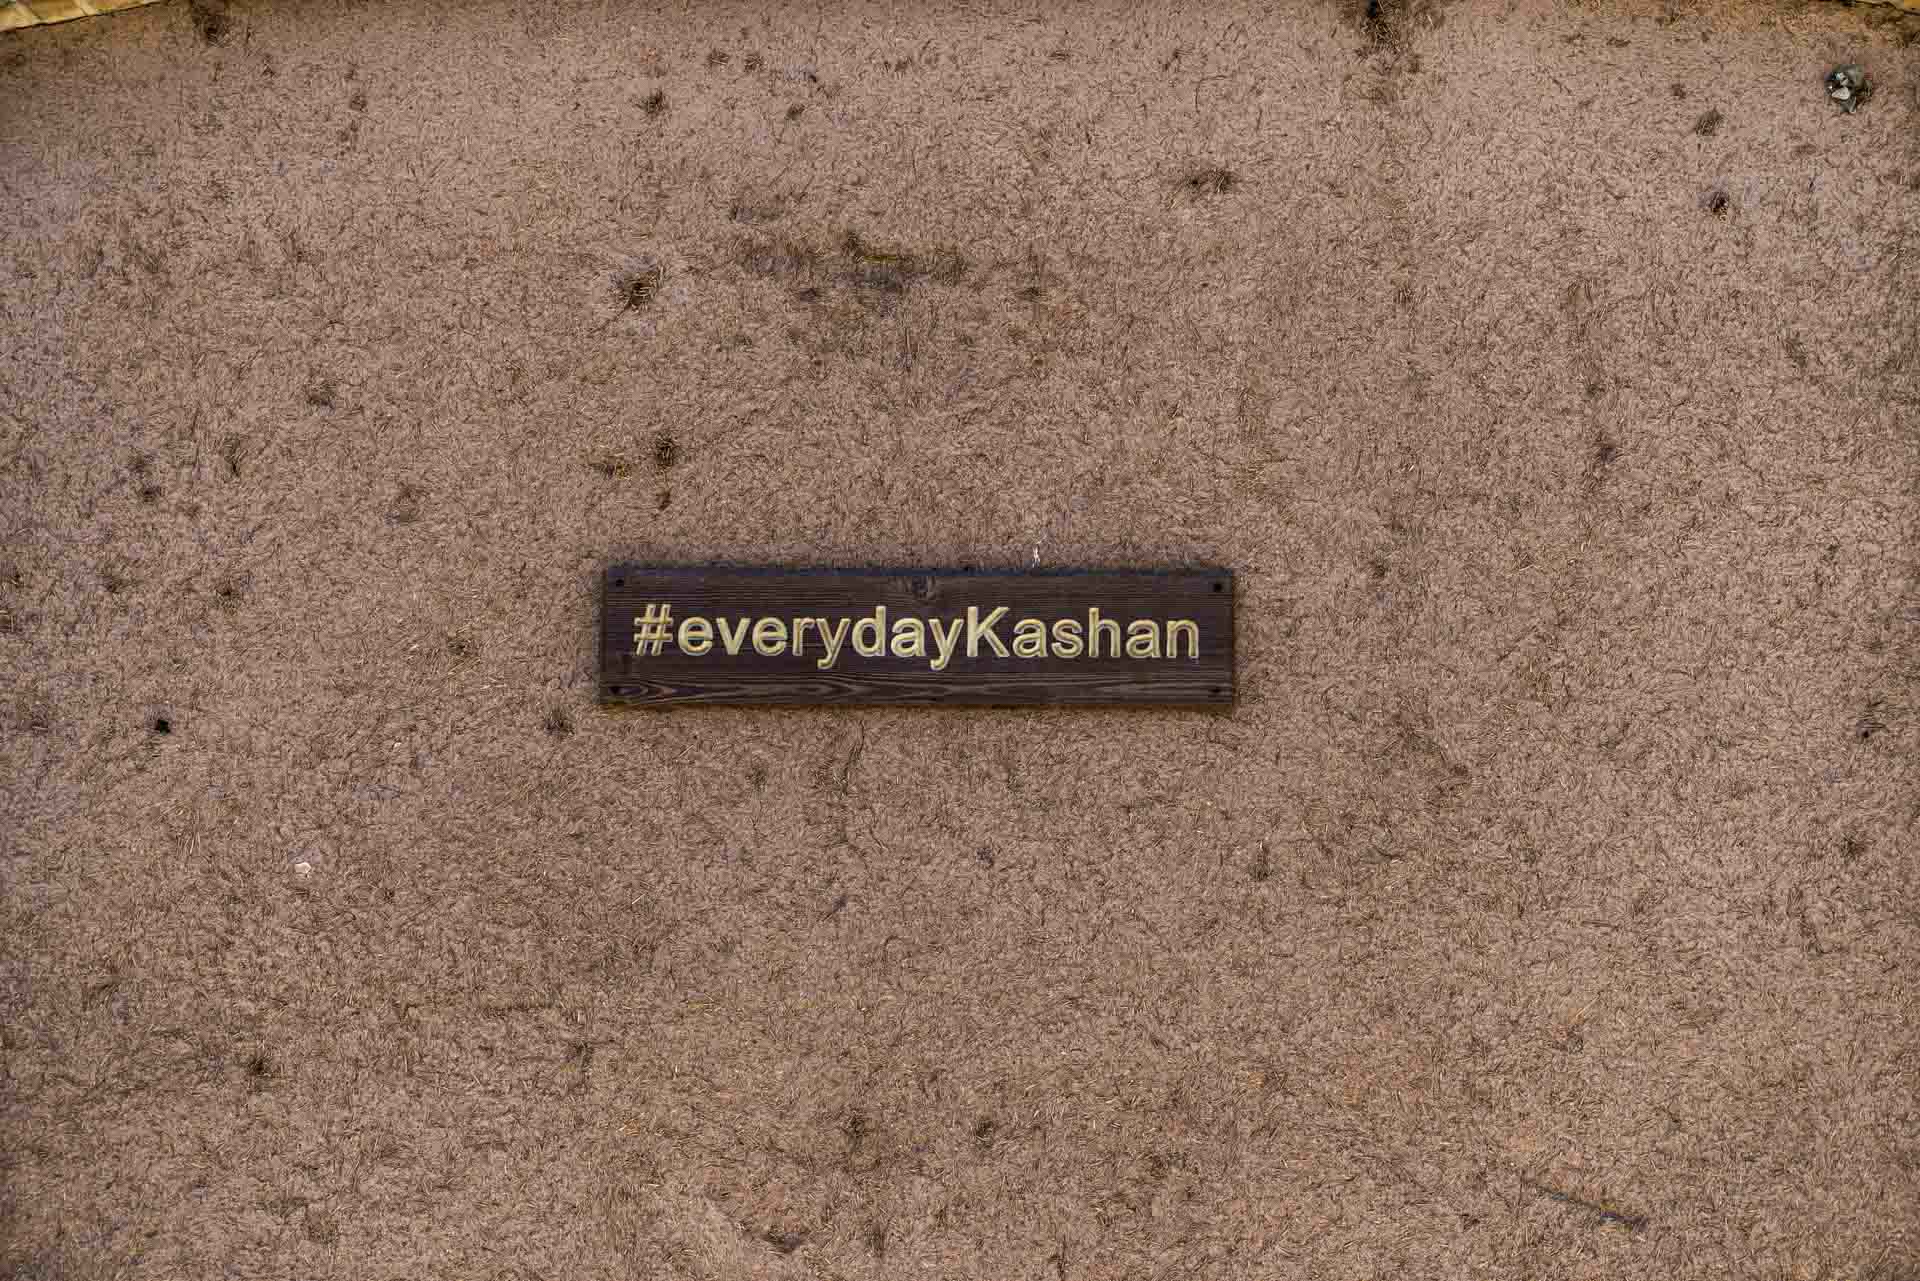 #everydaykashan, kashan, iran, pescart, photo blog, travel blog, blog, photo travel blog, enrico pescantini, pescantini